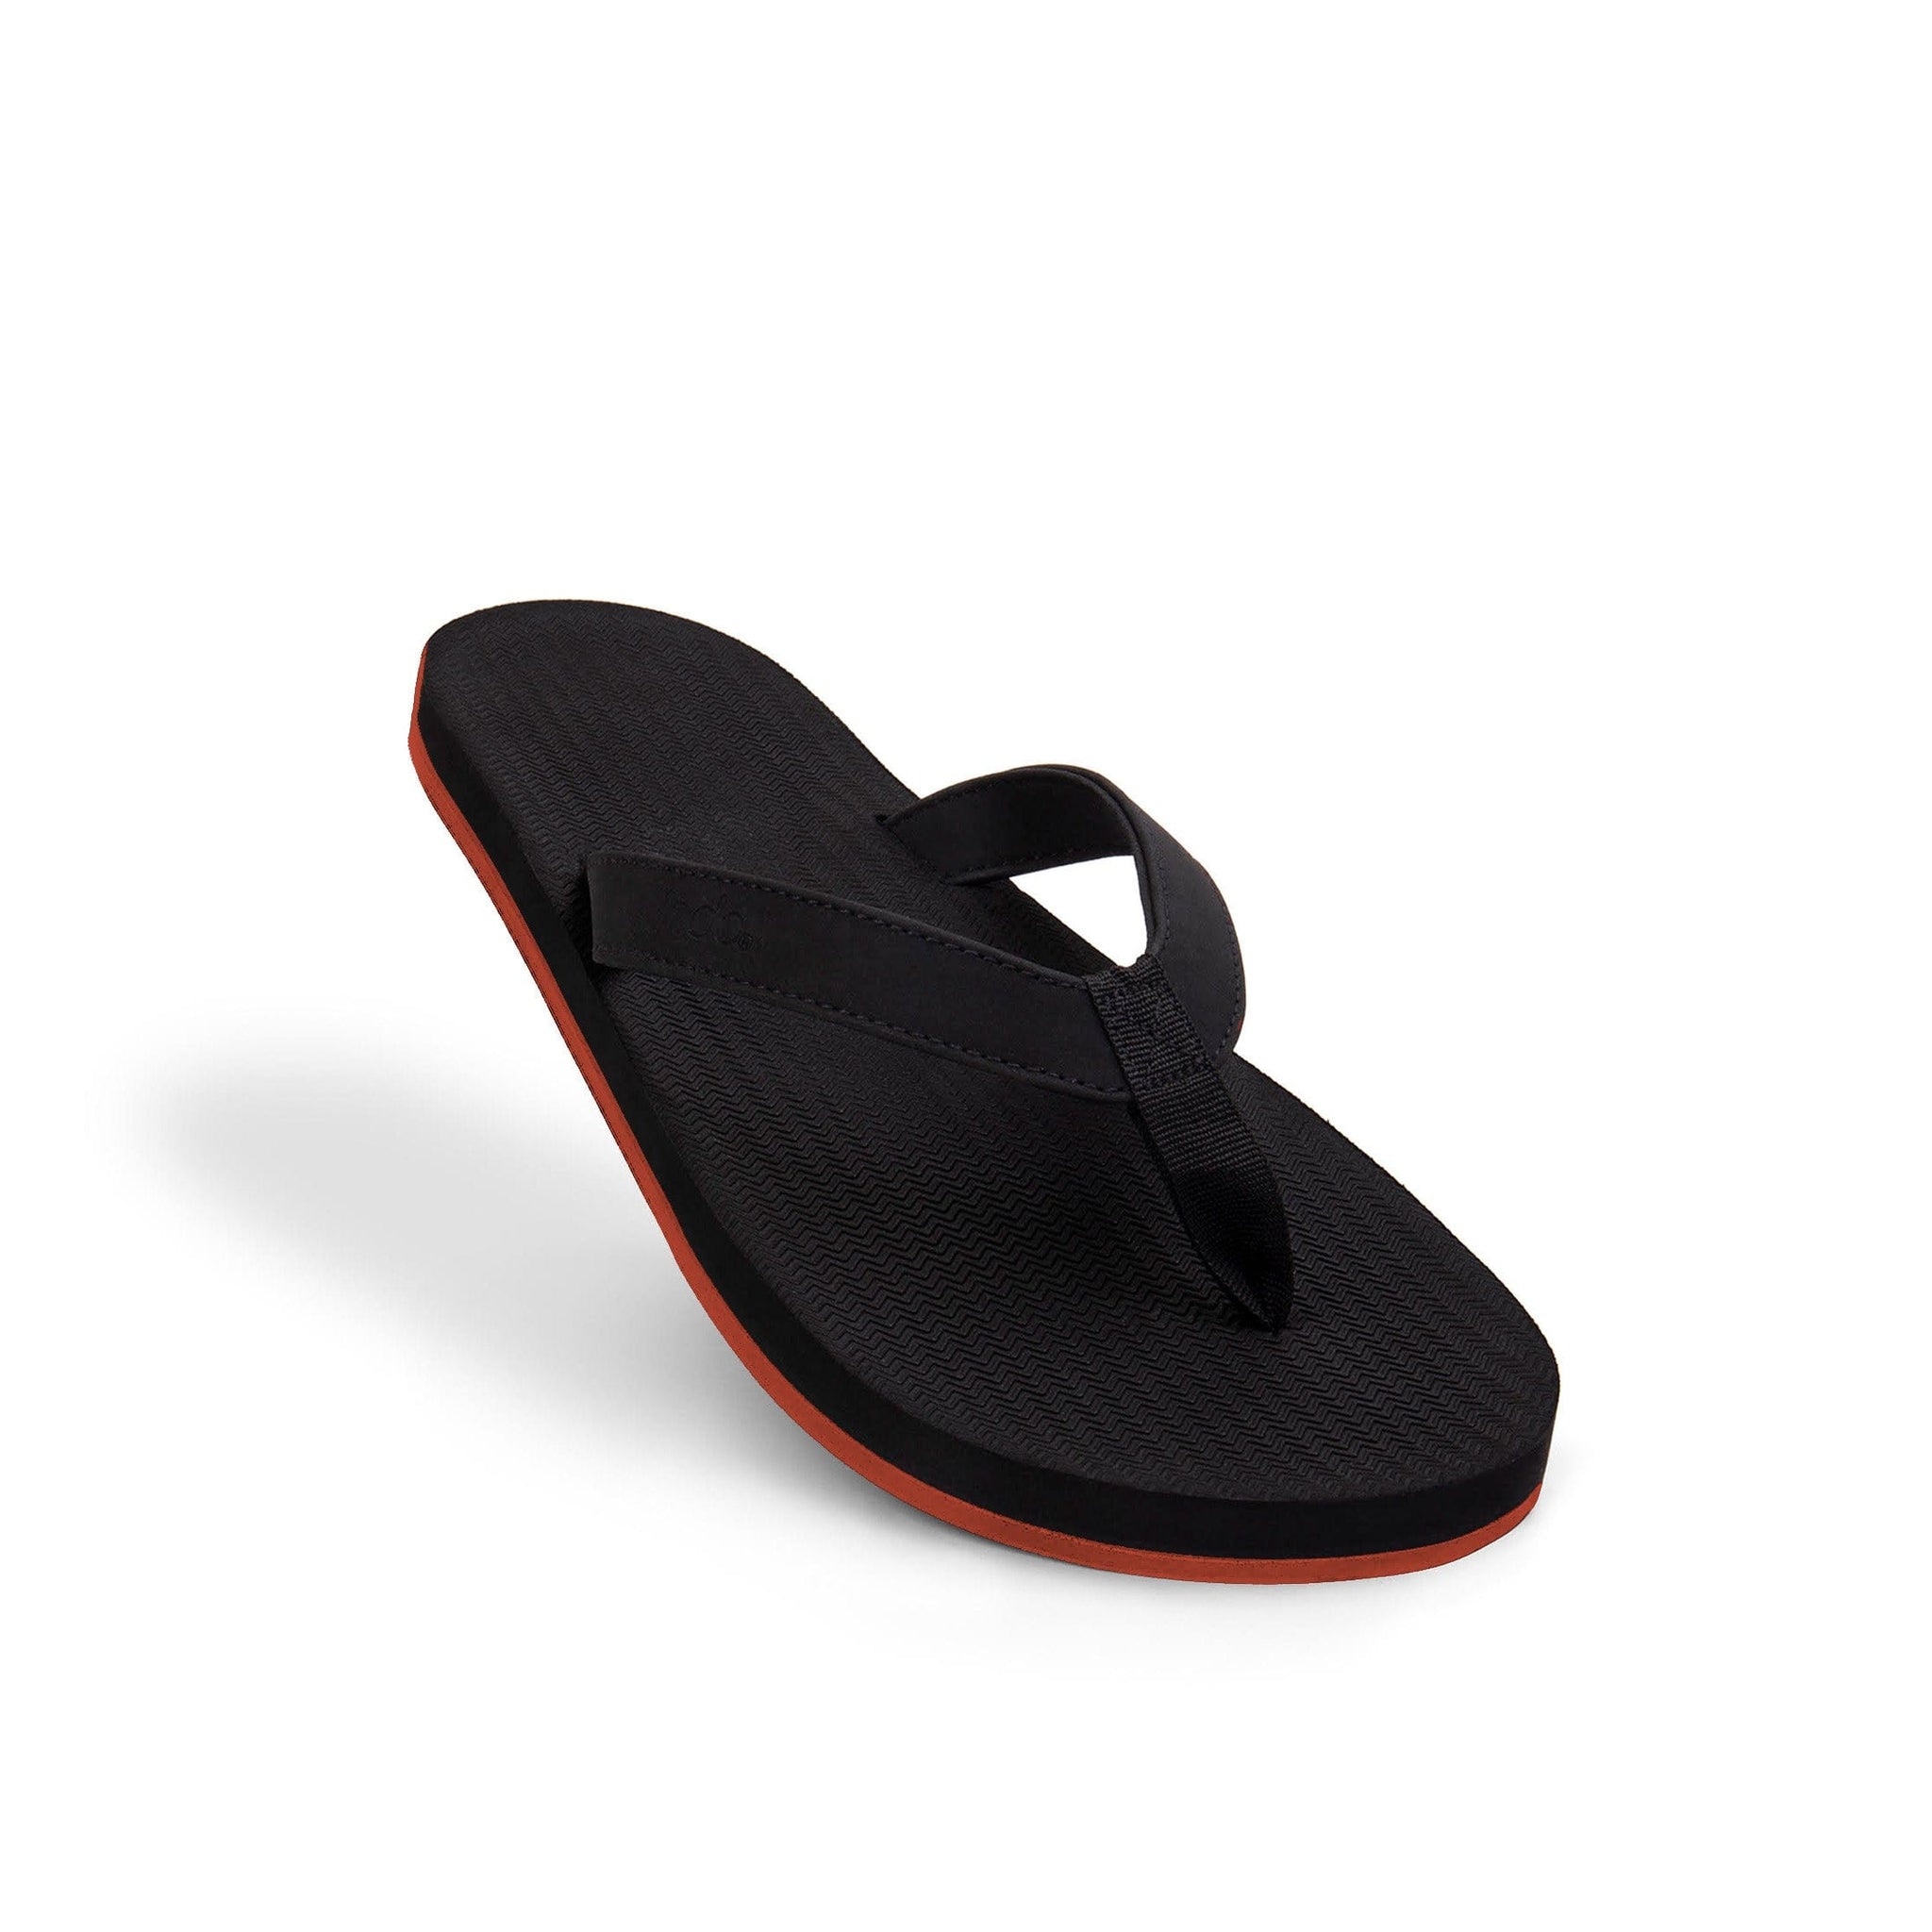 Men’s Flip Flops Sneaker Sole - Black/Orange Sole by Indosole